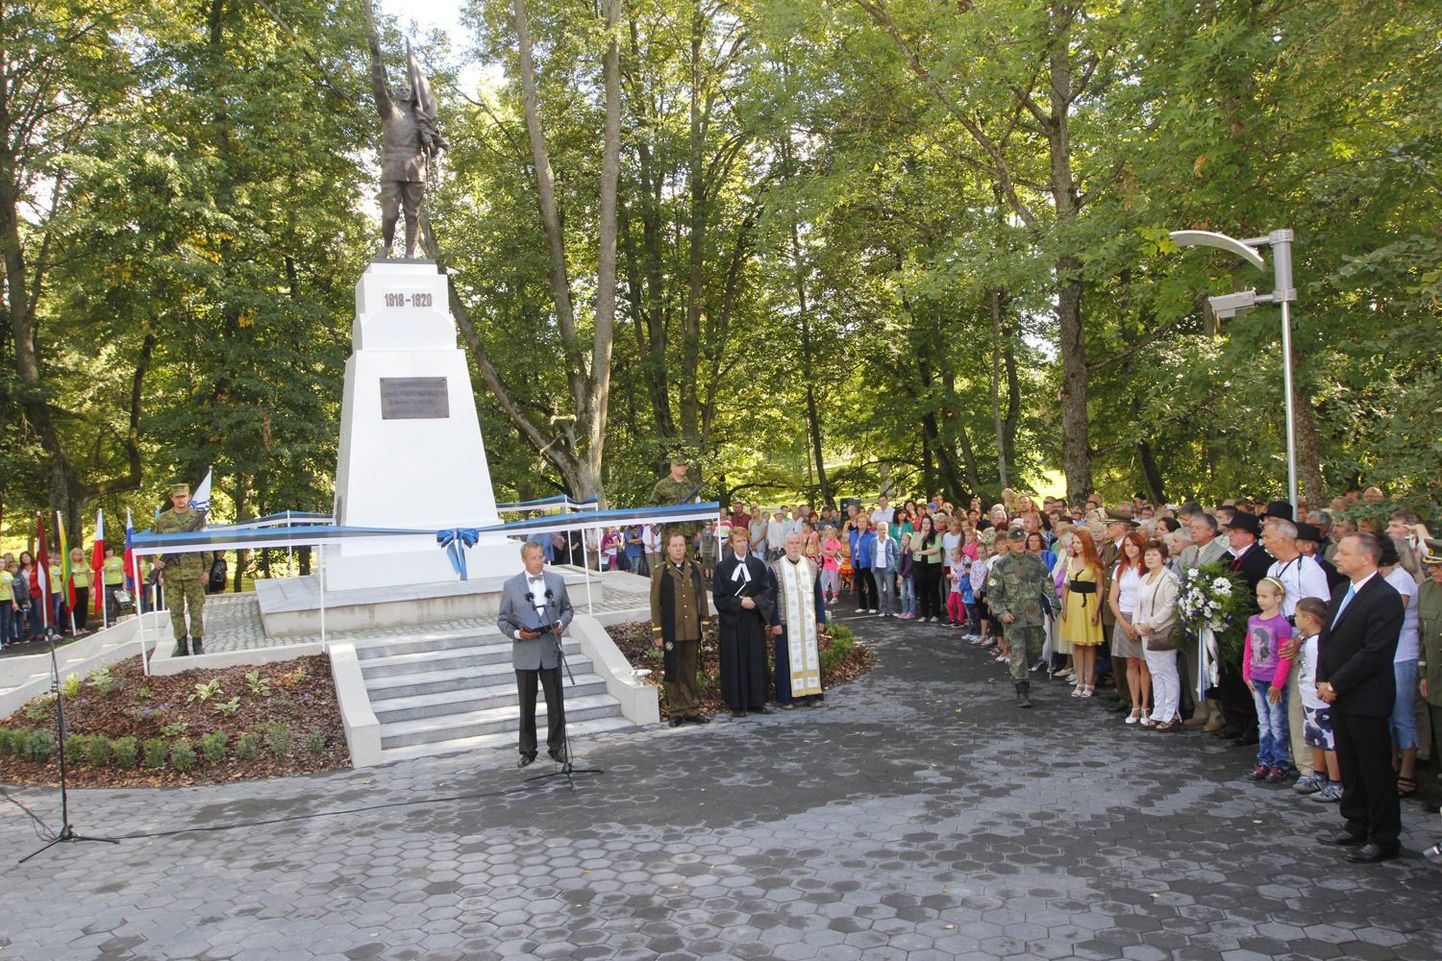 Samba tähtsust rõhutas selle avamisel ka Eesti Vabariigi president Toomas Hendrik Ilves.